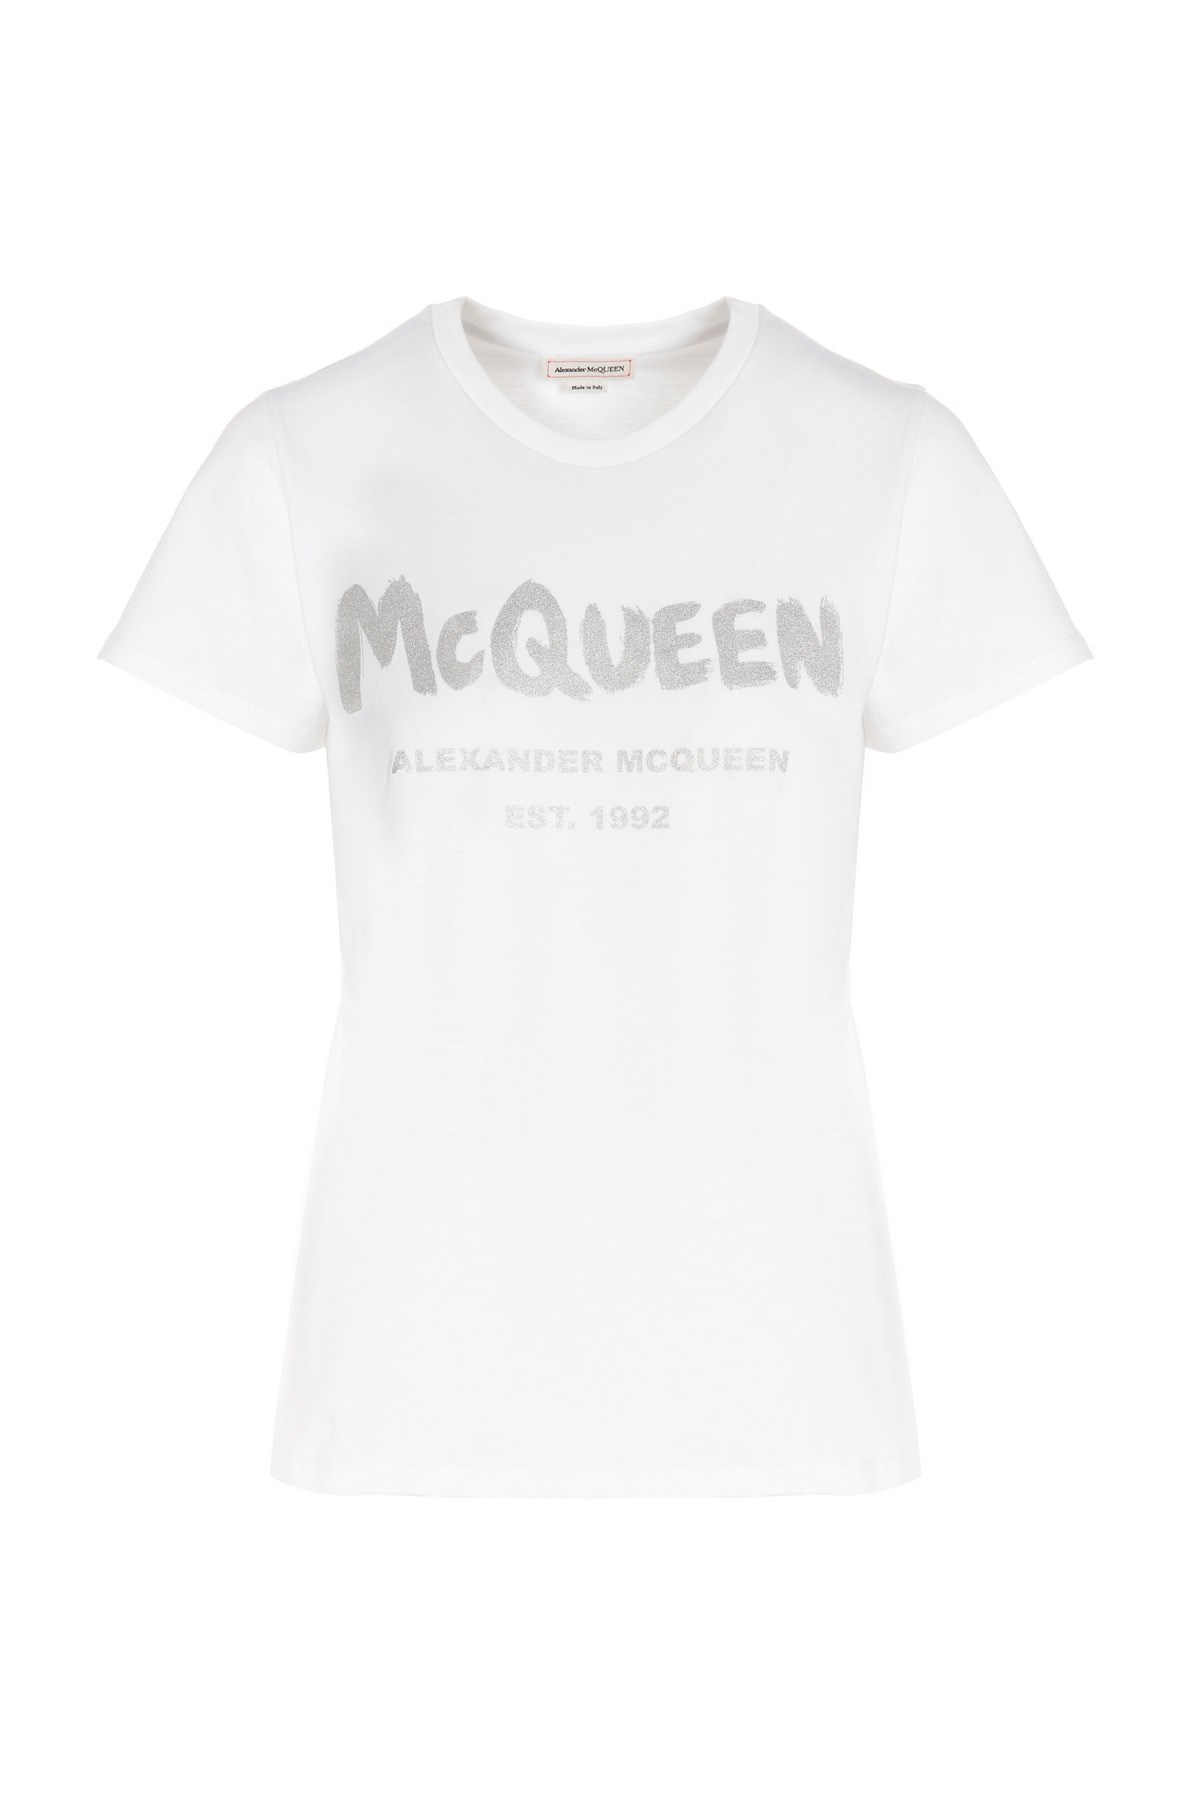 ALEXANDER MCQUEEN Logo Print T-Shirt